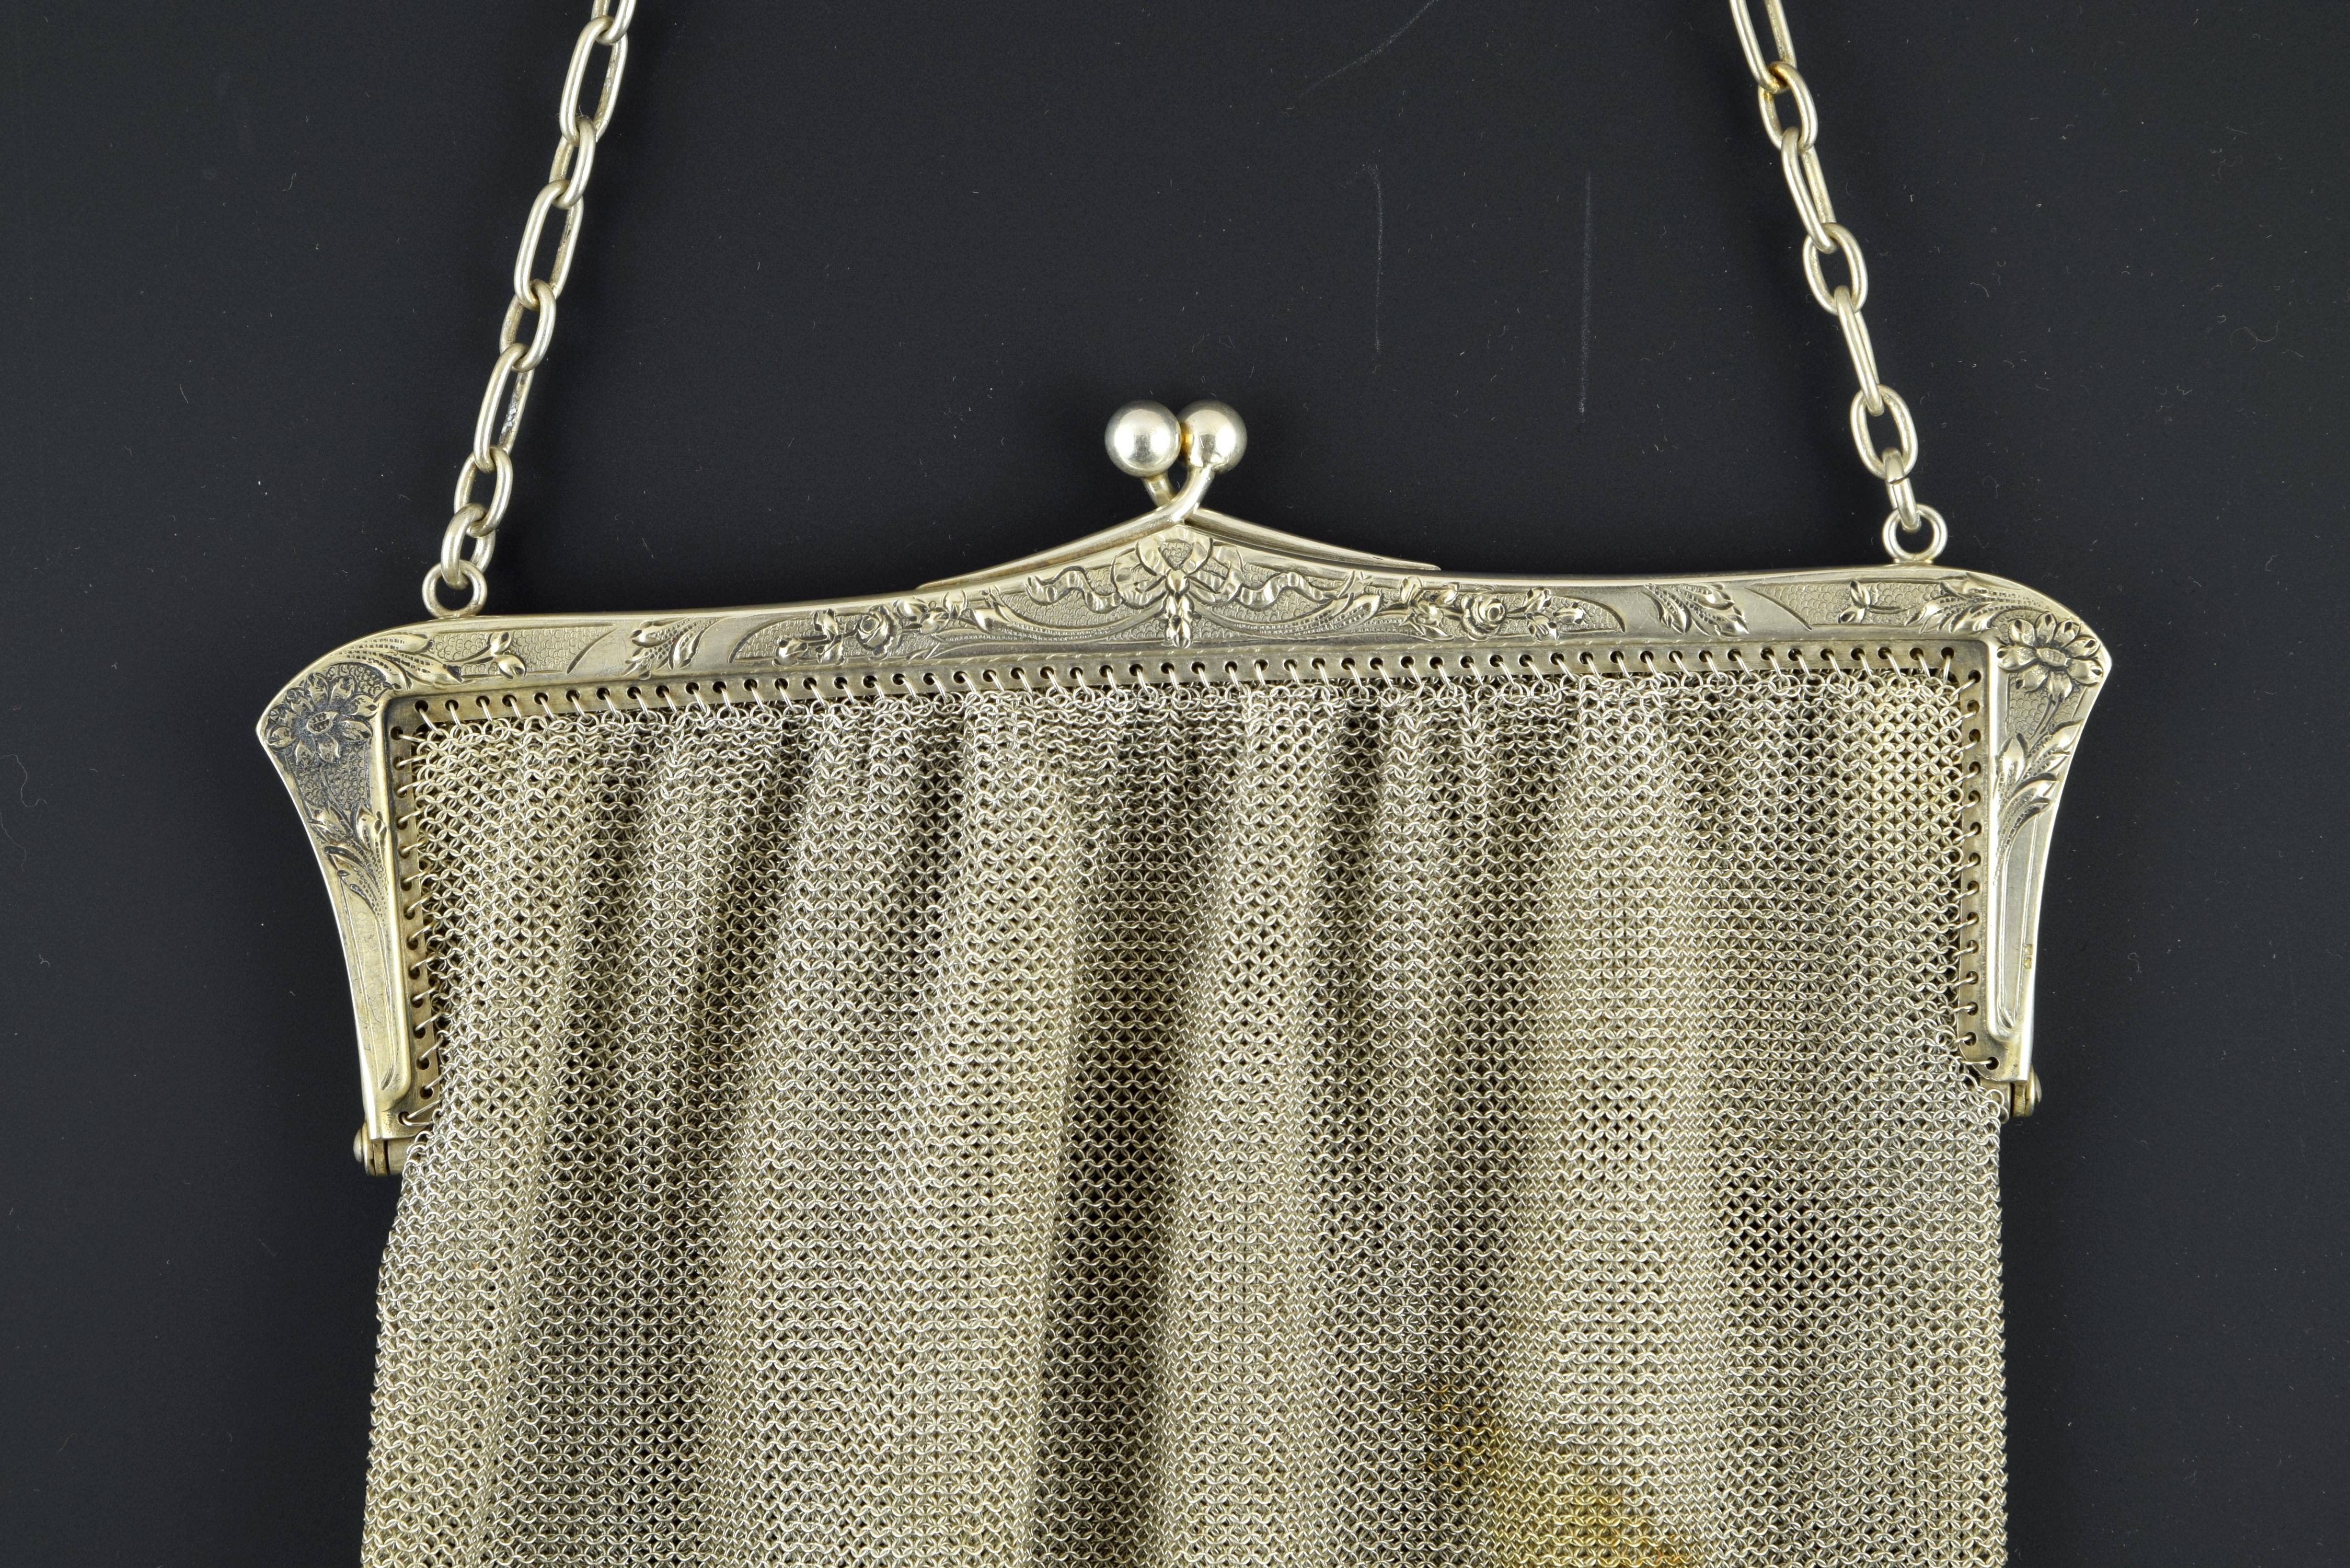 Silberne Netztasche in ihrer Farbe mit dreieckigen Elementen auf dem Boden verziert, die einen glatten Verschluss durch Scharniere und eine Kette von abwechselnd langen und kurzen Gliedern hat. Diese Art von Stücken war im 19. Jahrhundert sehr